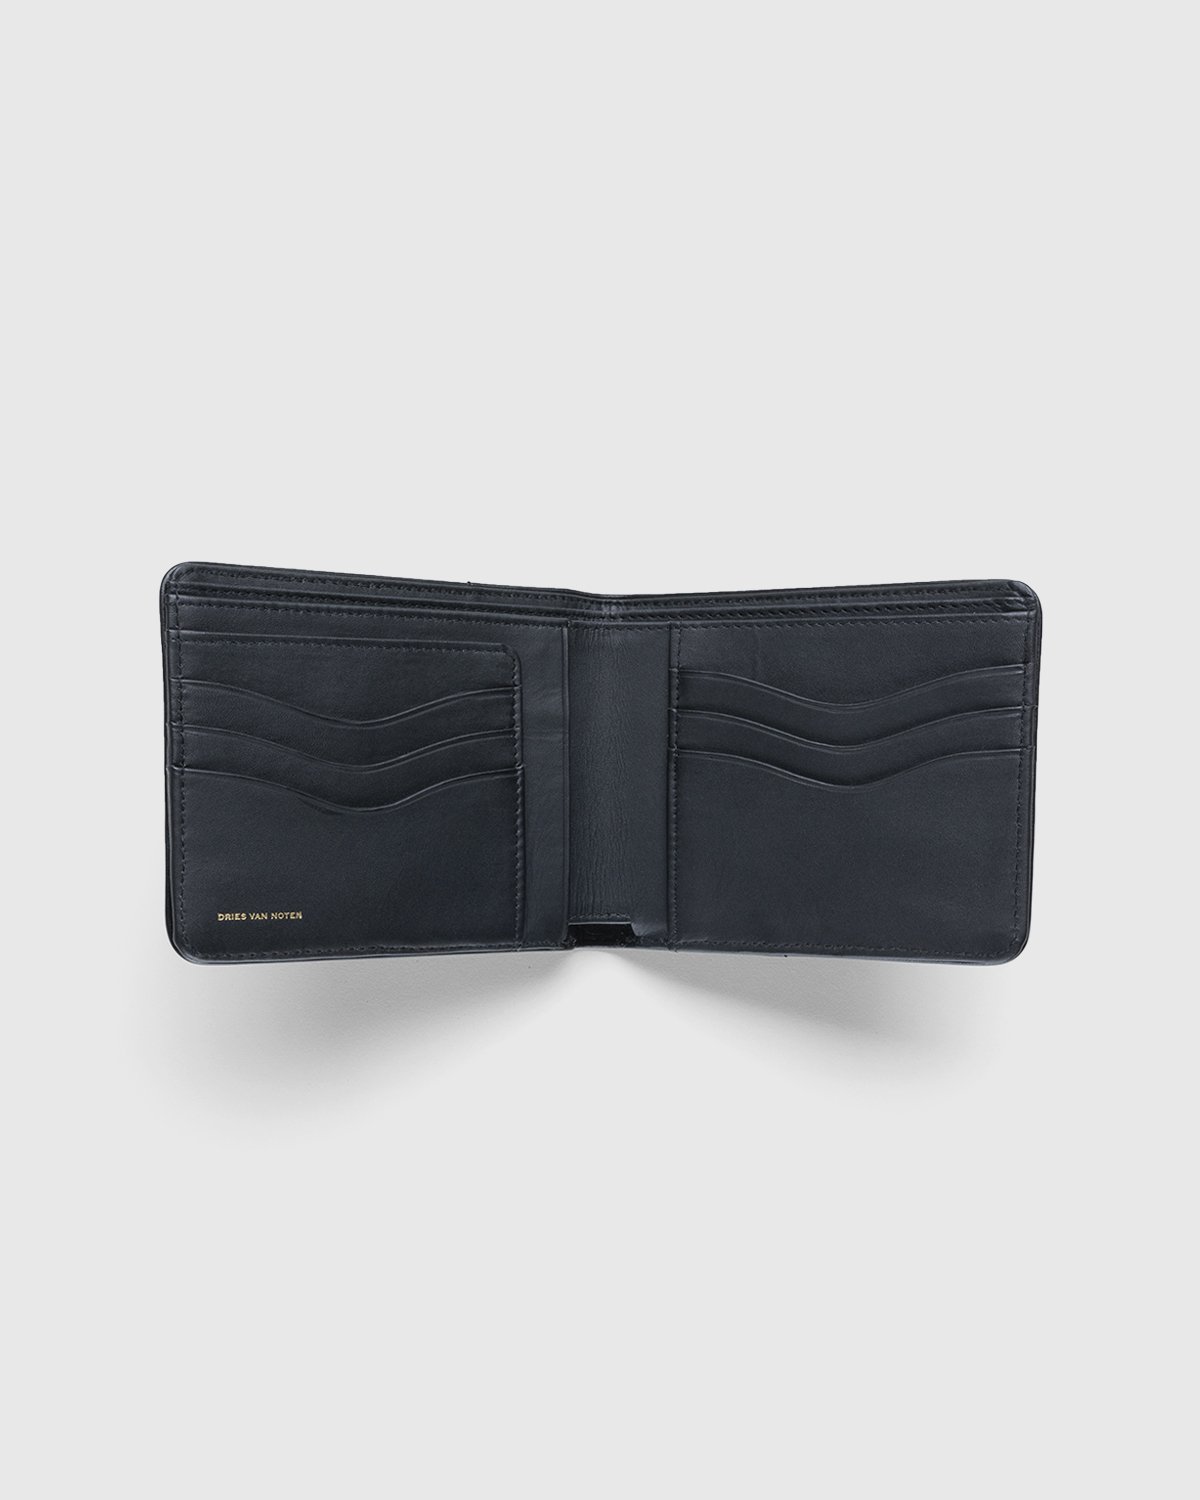 Dries van Noten - Leather Wallet Black - Accessories - Black - Image 3